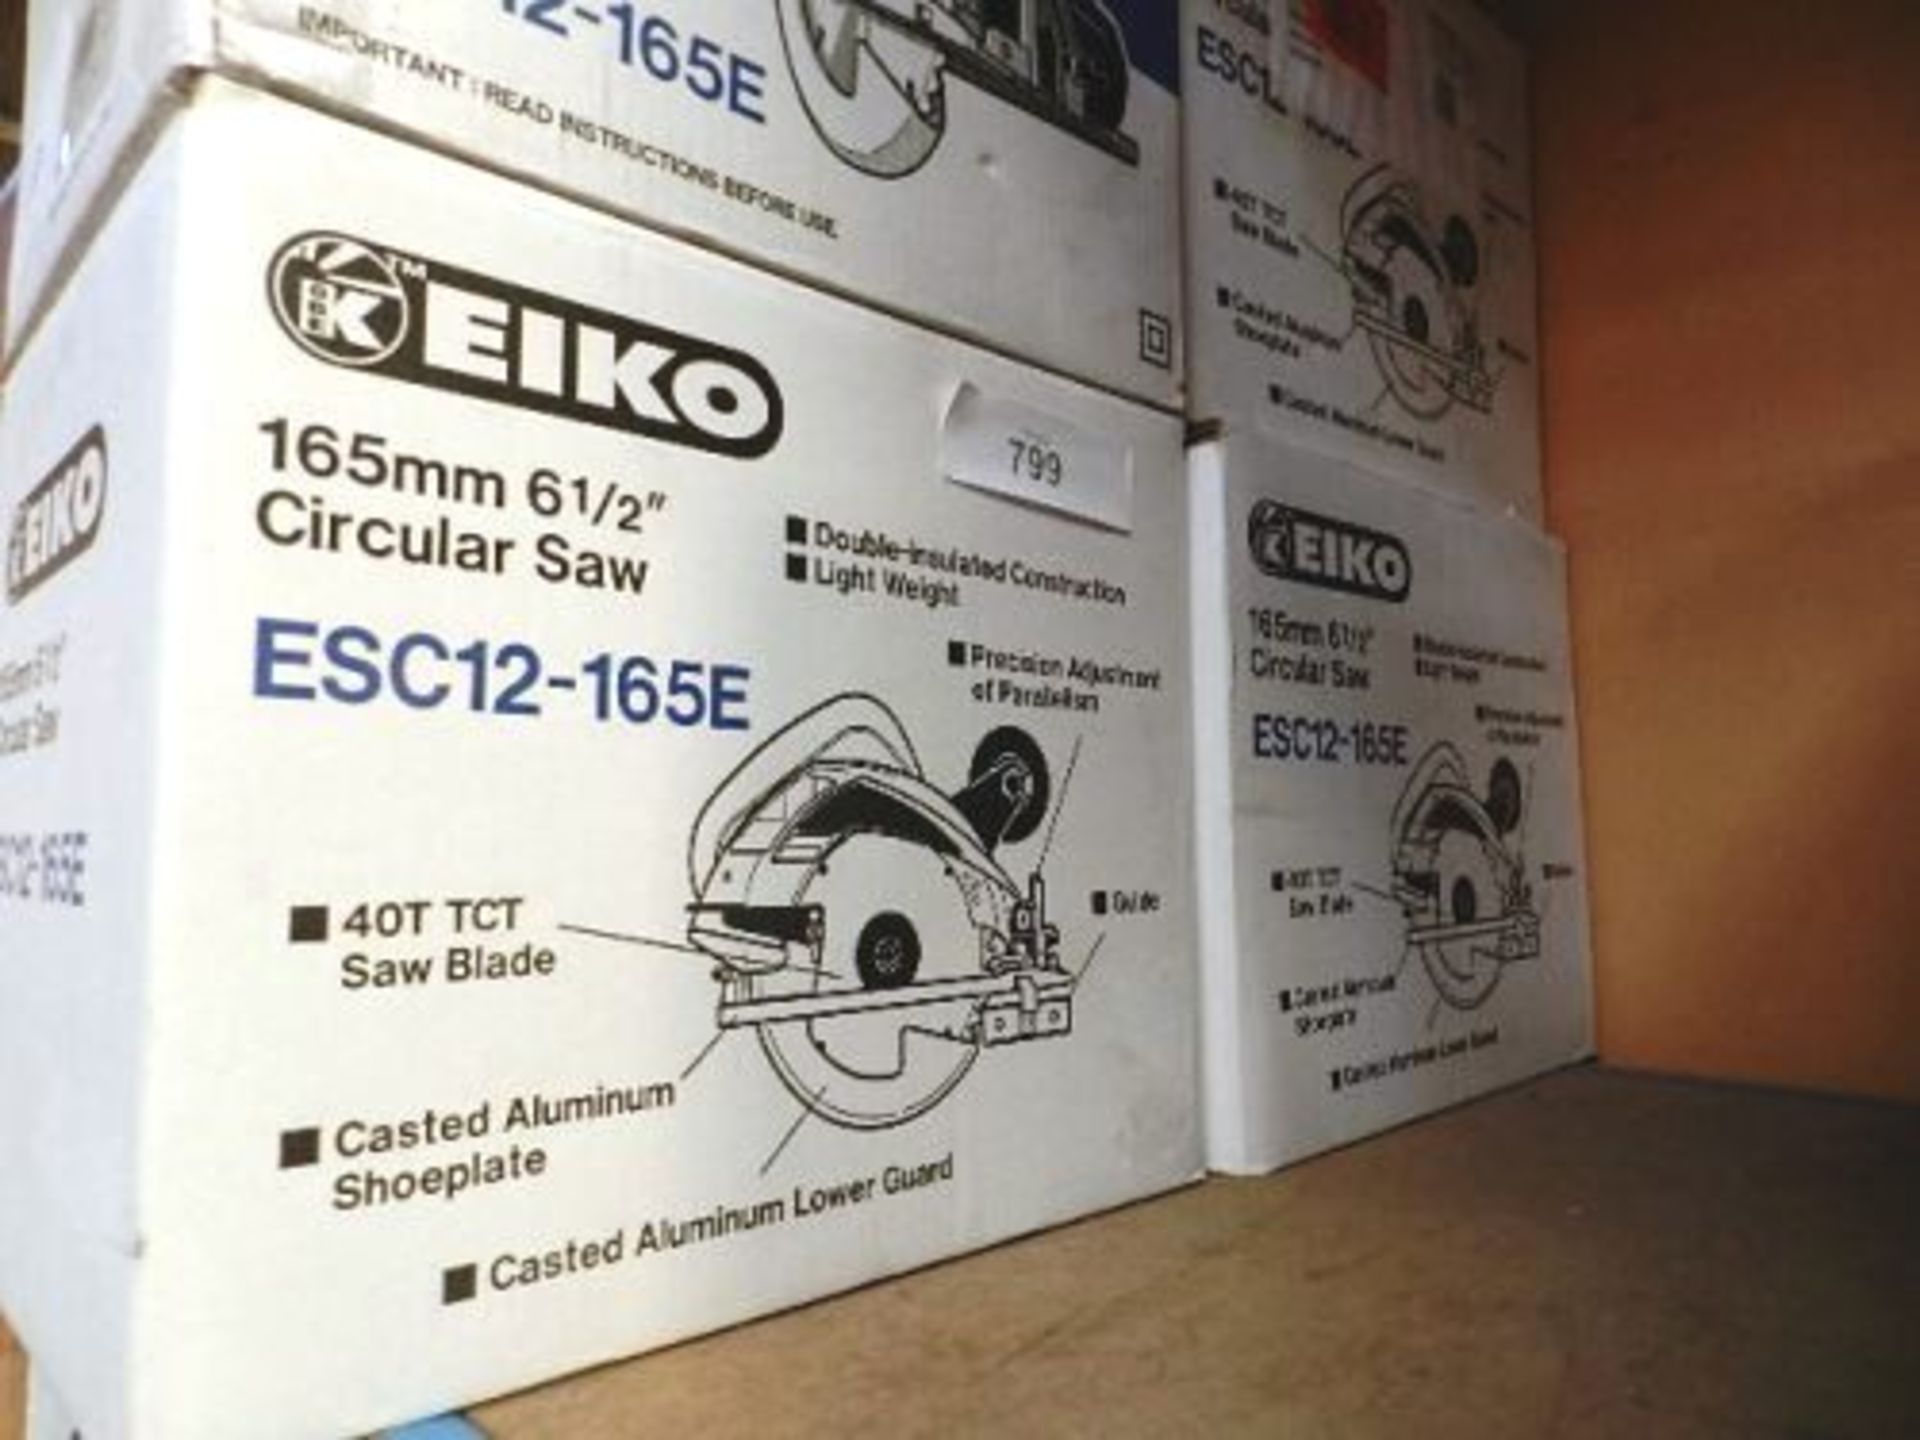 4 x EIKO 165mm circular saws, Model ESC12-165E, 110V - (grade B) (ES17)